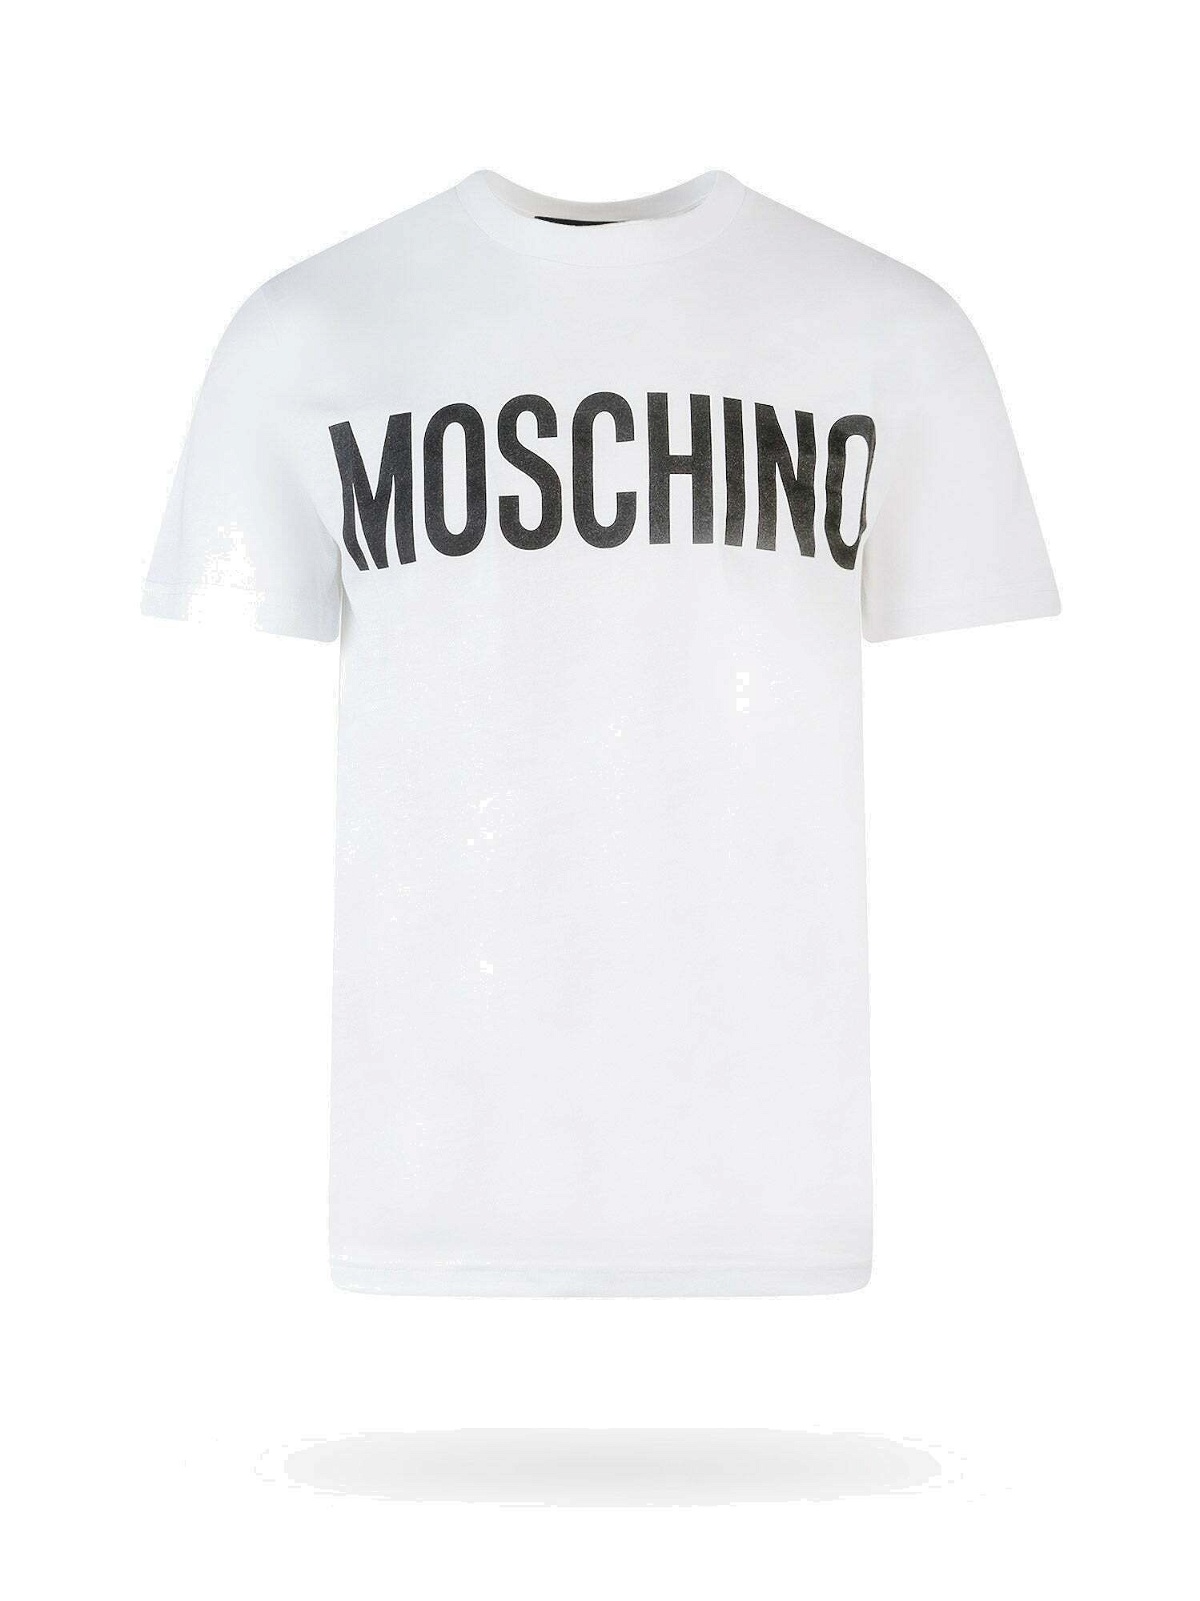 Moschino T Shirt White Mens Moschino